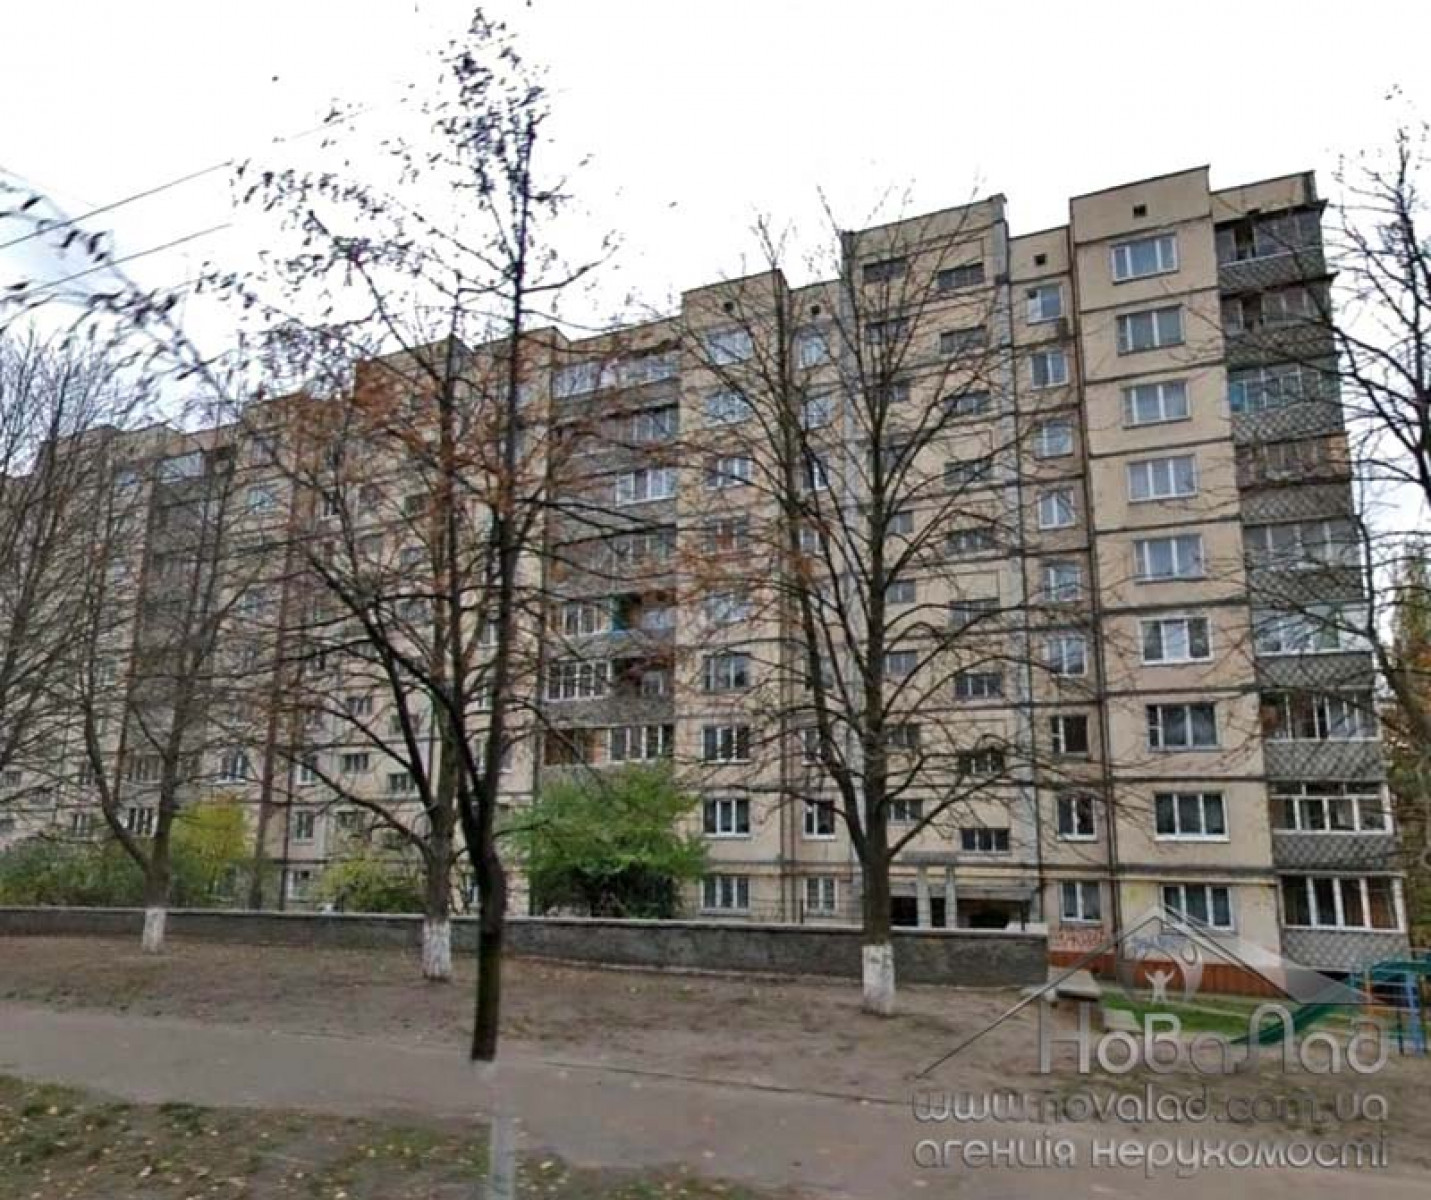 Предлагается уютная, просторная, светлая 2-комнатная квартира по адресу: ул. Ломоносова, 29, Голосеевский район.